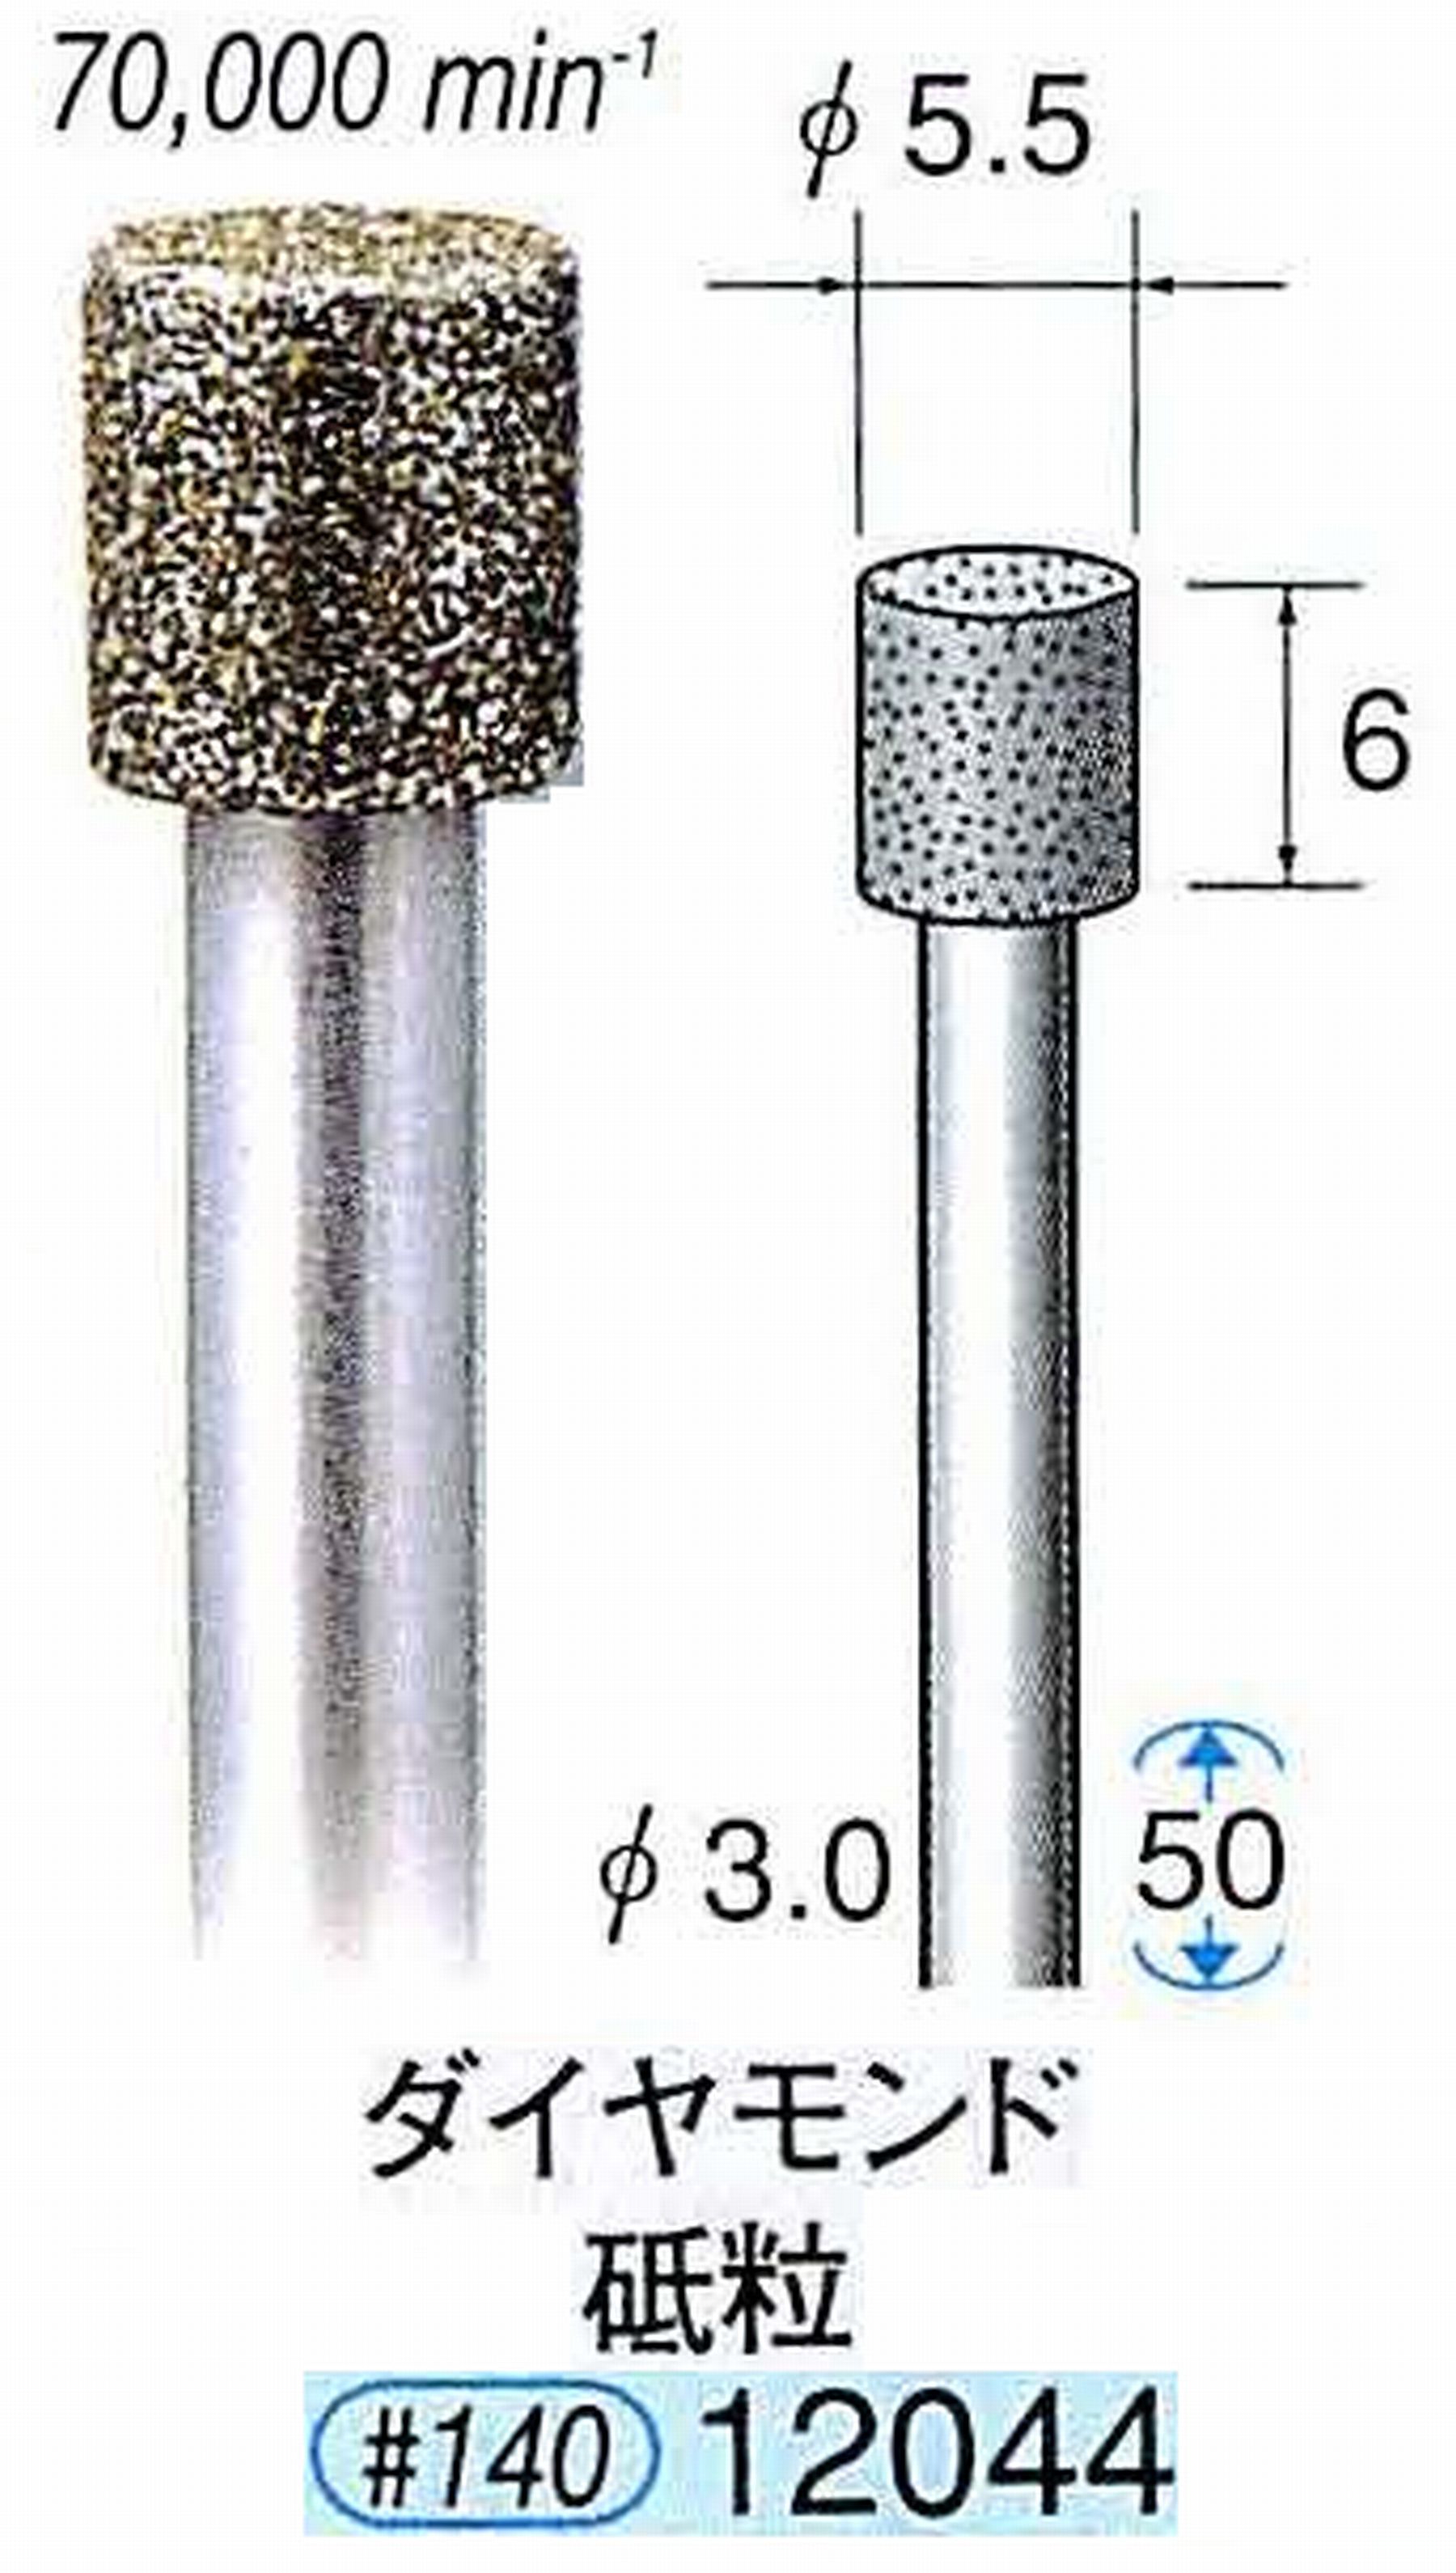 ナカニシ/NAKANISHI 電着ダイヤモンド ダイヤモンド砥粒 軸径(シャンク)φ3.0mm 12044